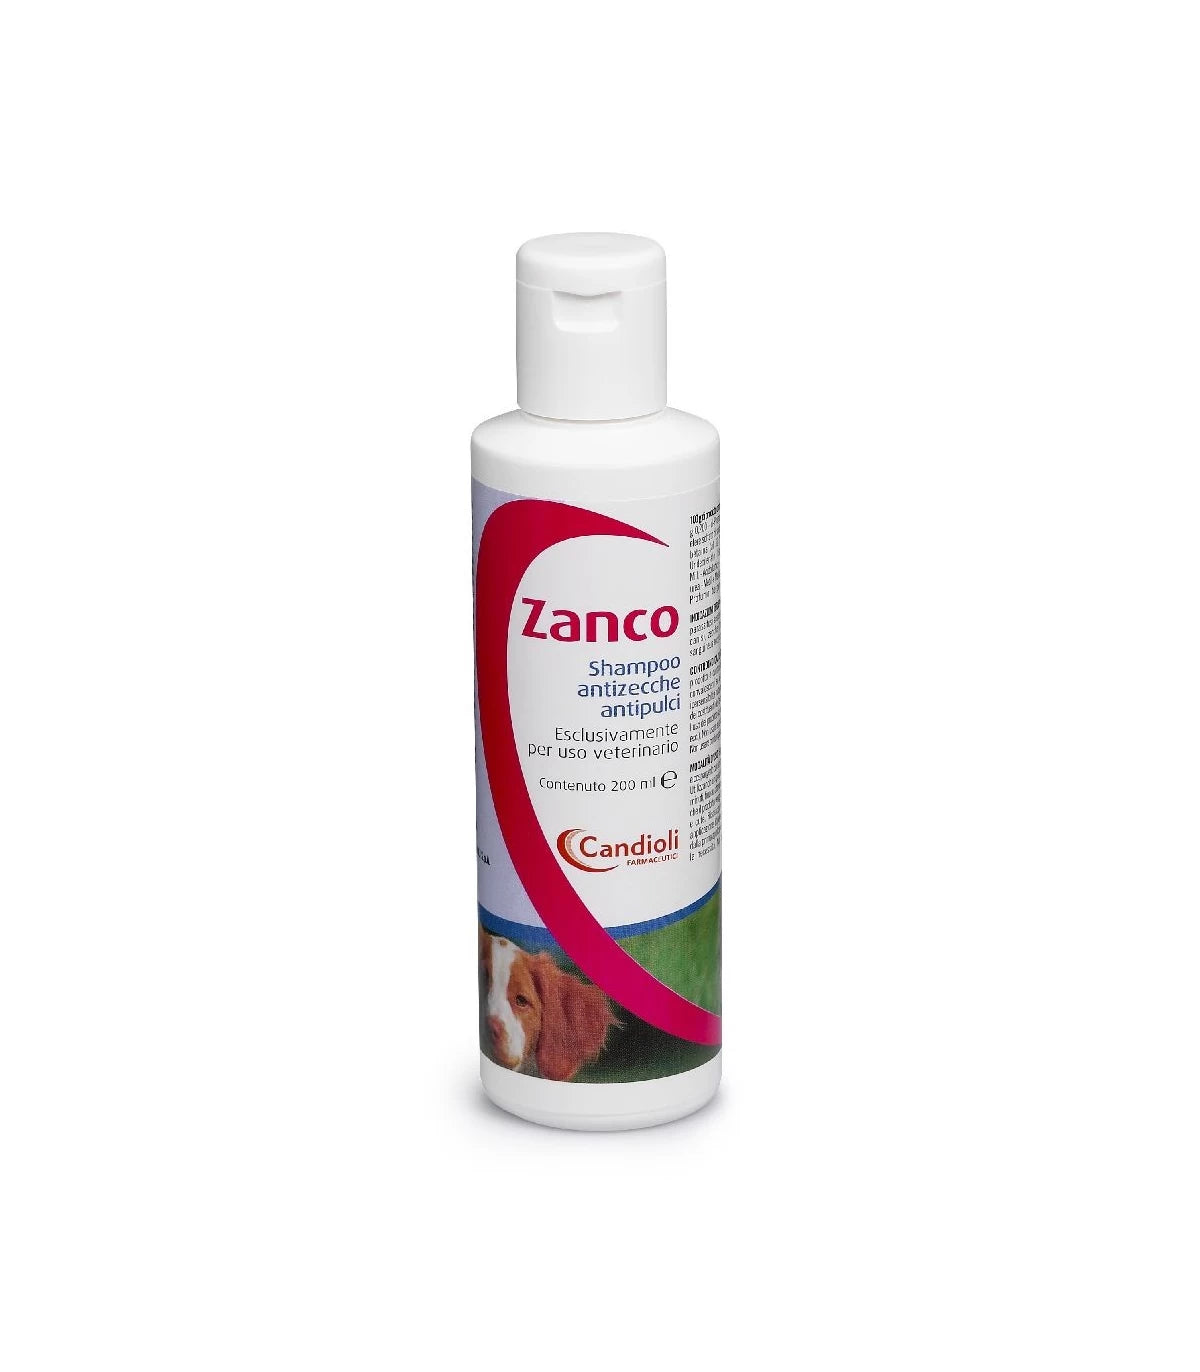 ZANCO SHAMPOO 200ml - Shampoo antiparassitario per la pulizia a secco del cane